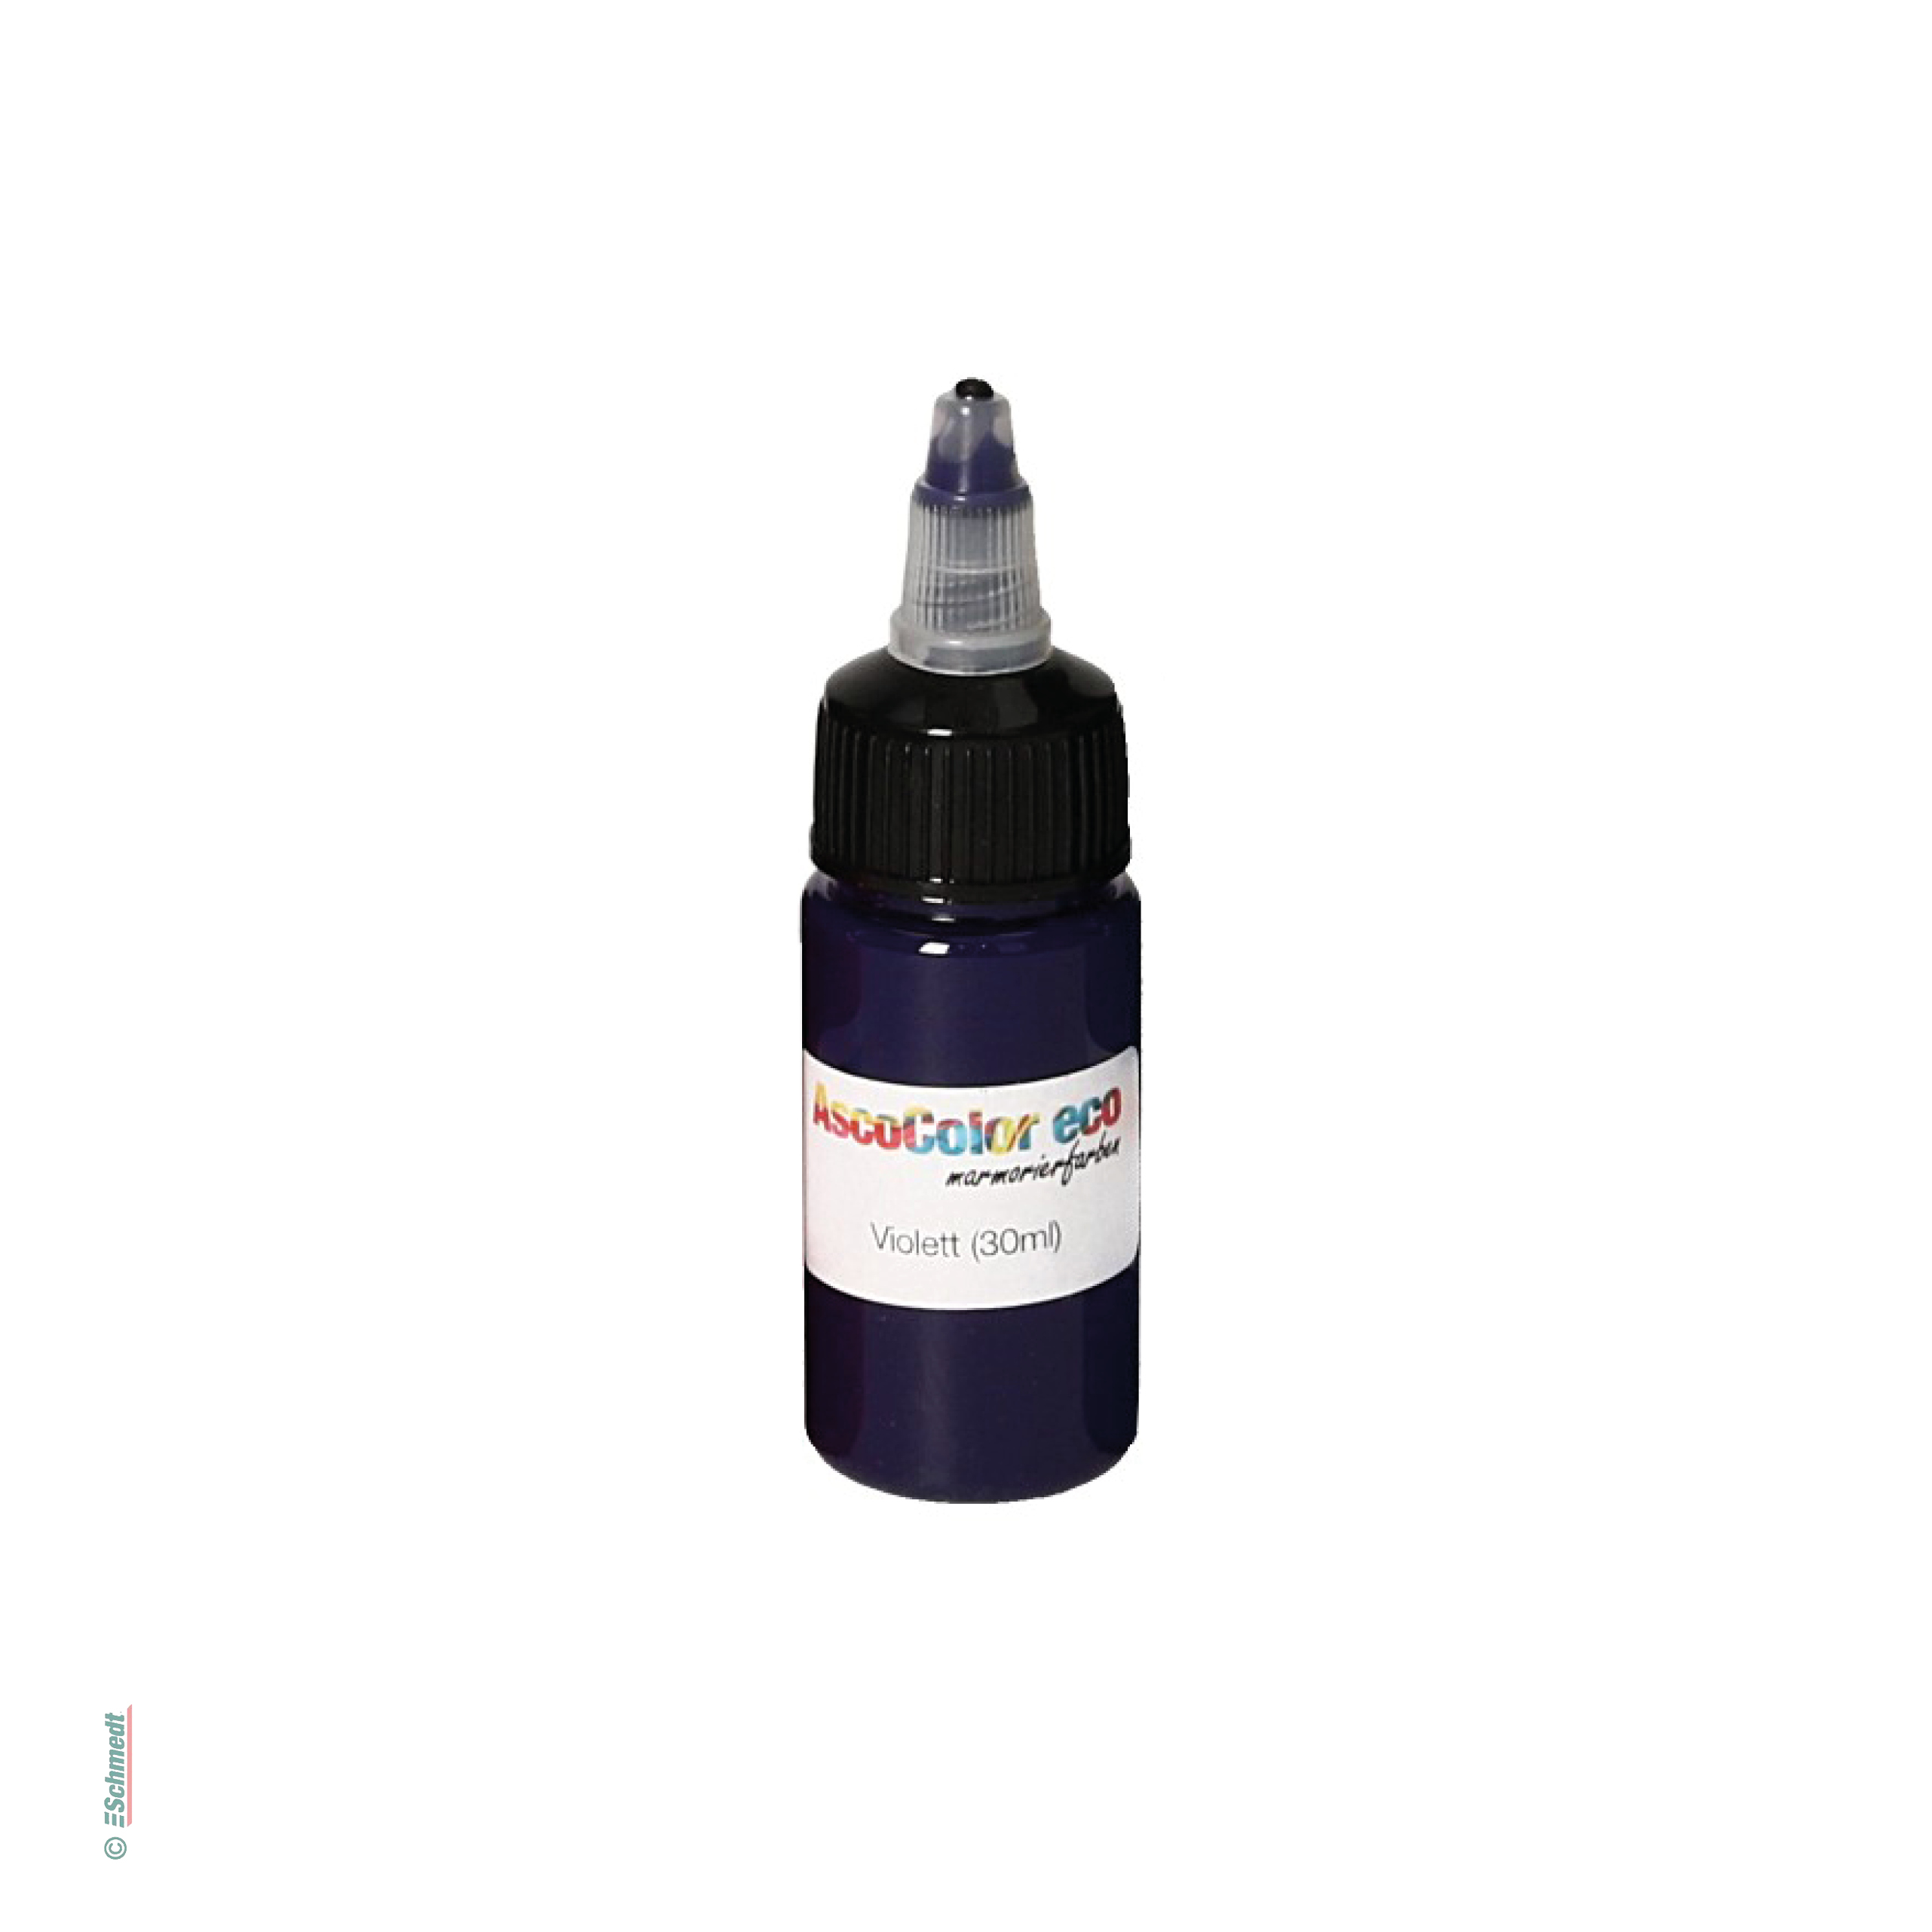 AscoColor eco - Marmorierfarbe - Farbe 104 - violett - Gebindegröße Flasche / 30 ml - zur Herstellung marmorierter Papiere...